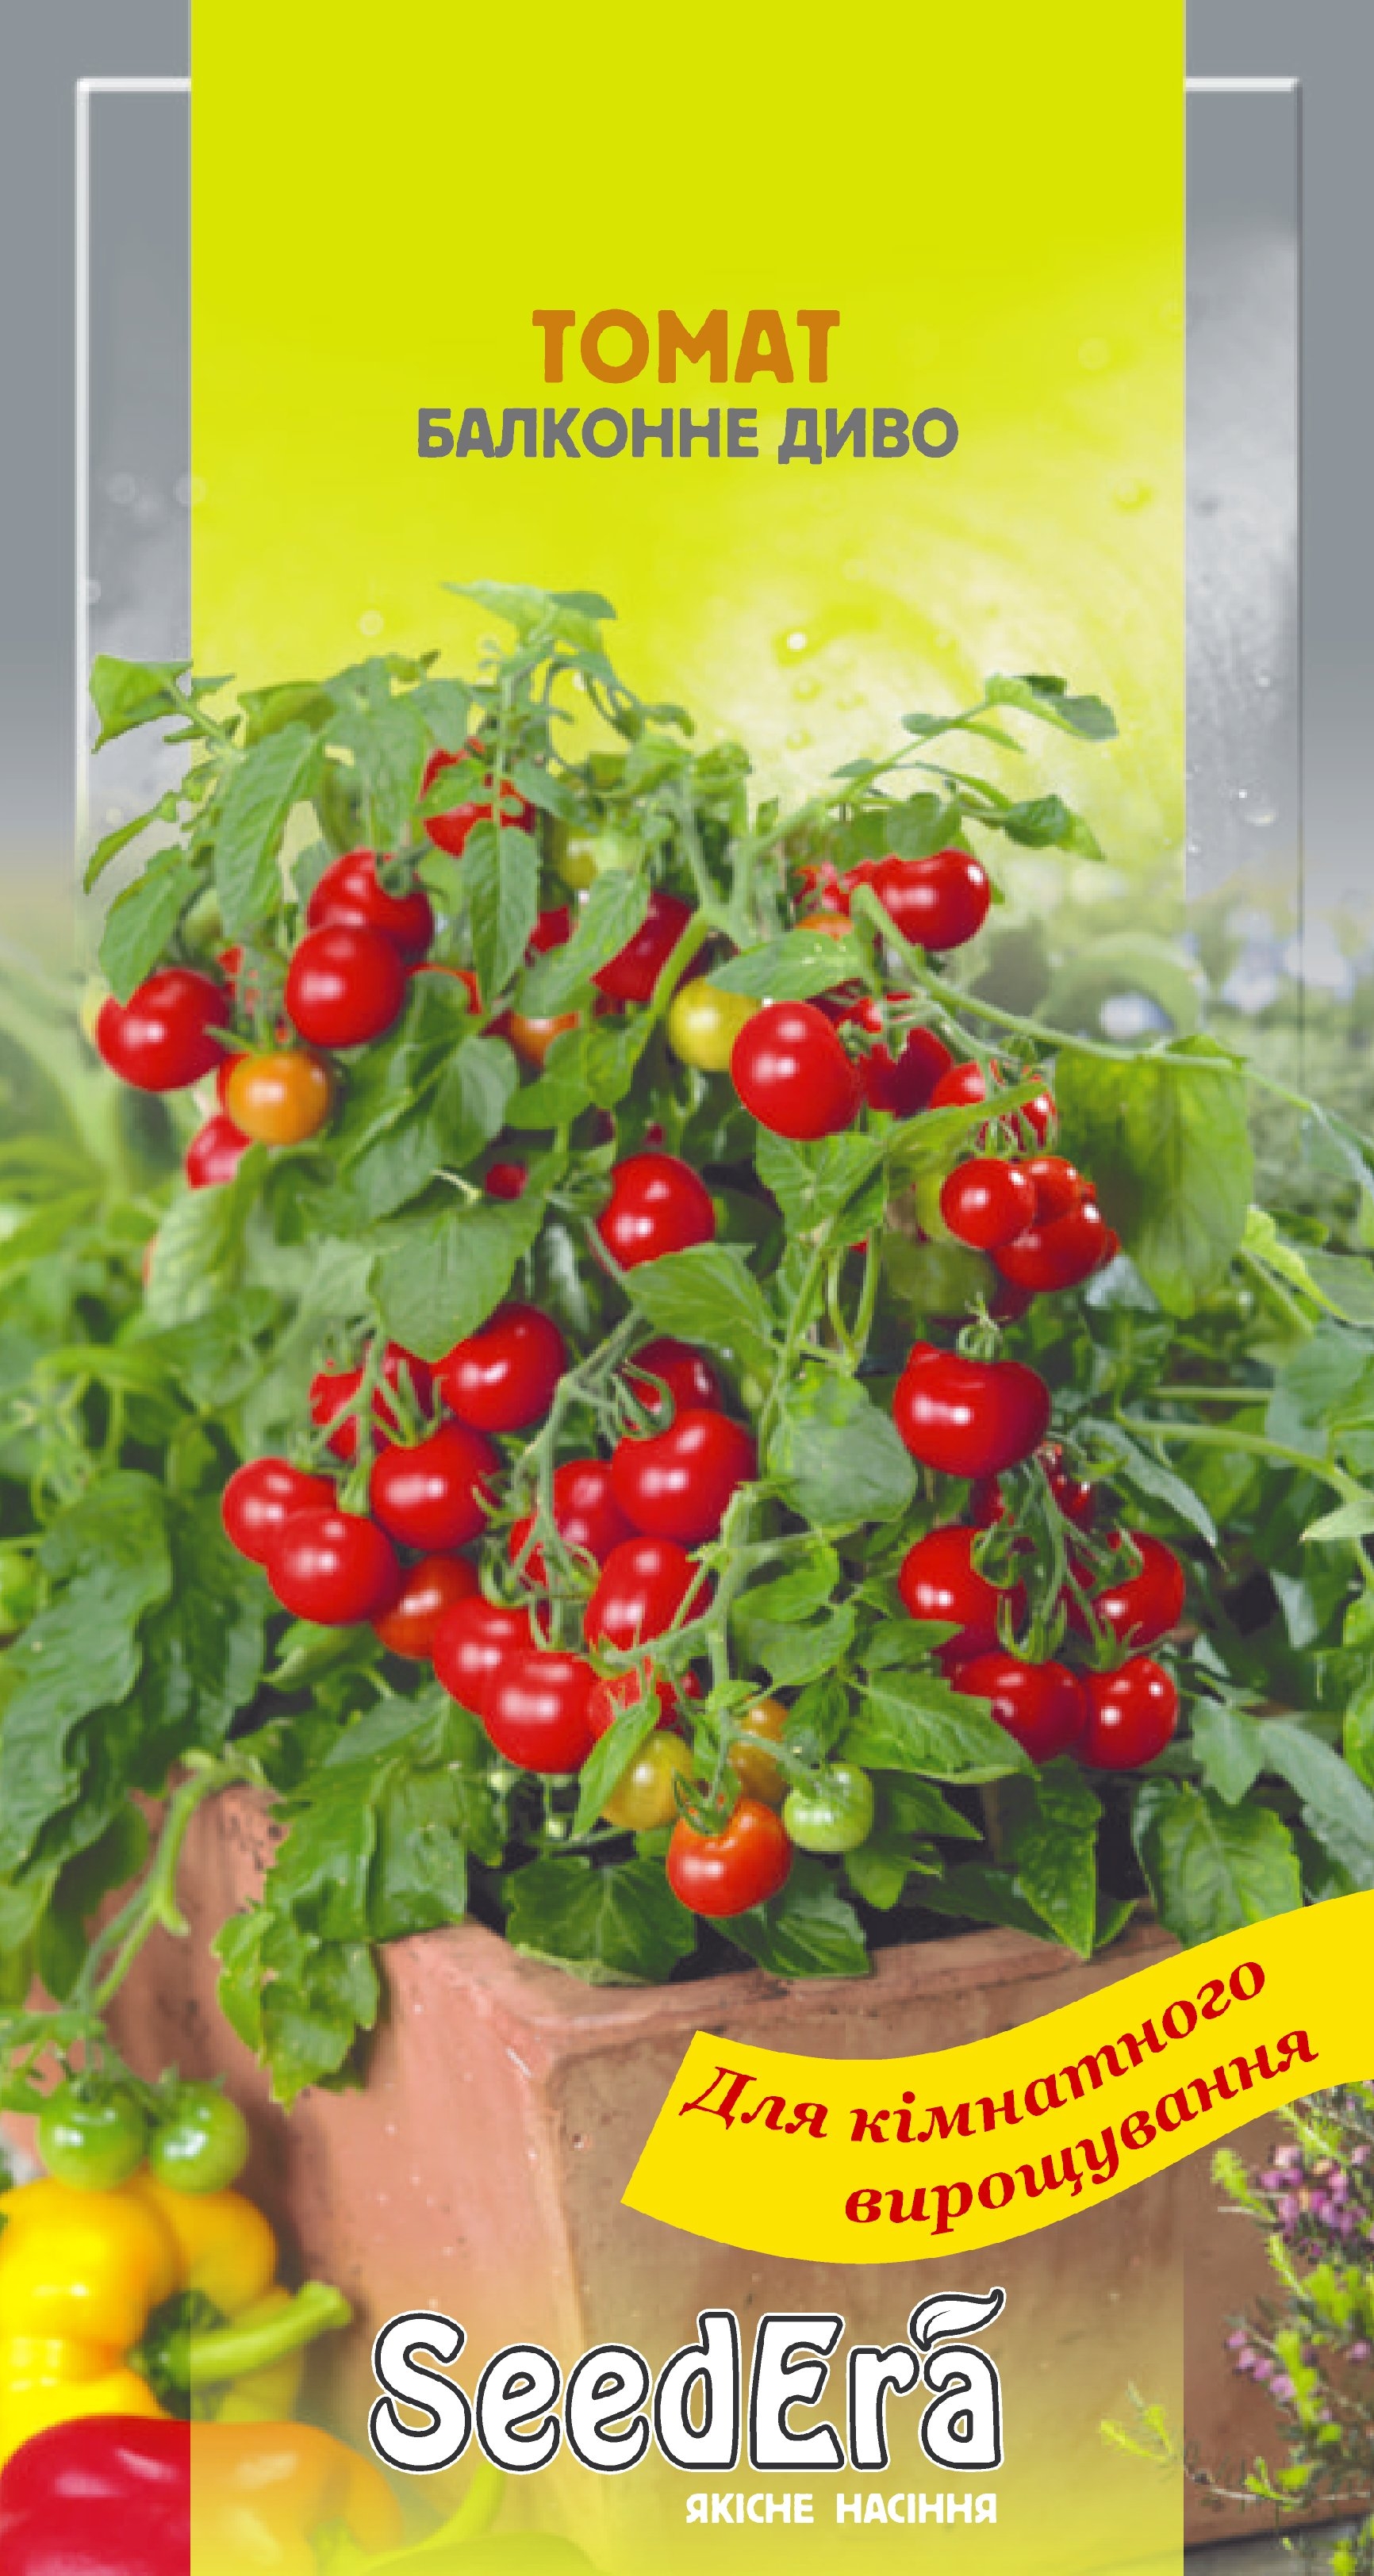 Томат “Балконне диво” – садіть на балконі та насолоджуйтесь смачним врожаєм